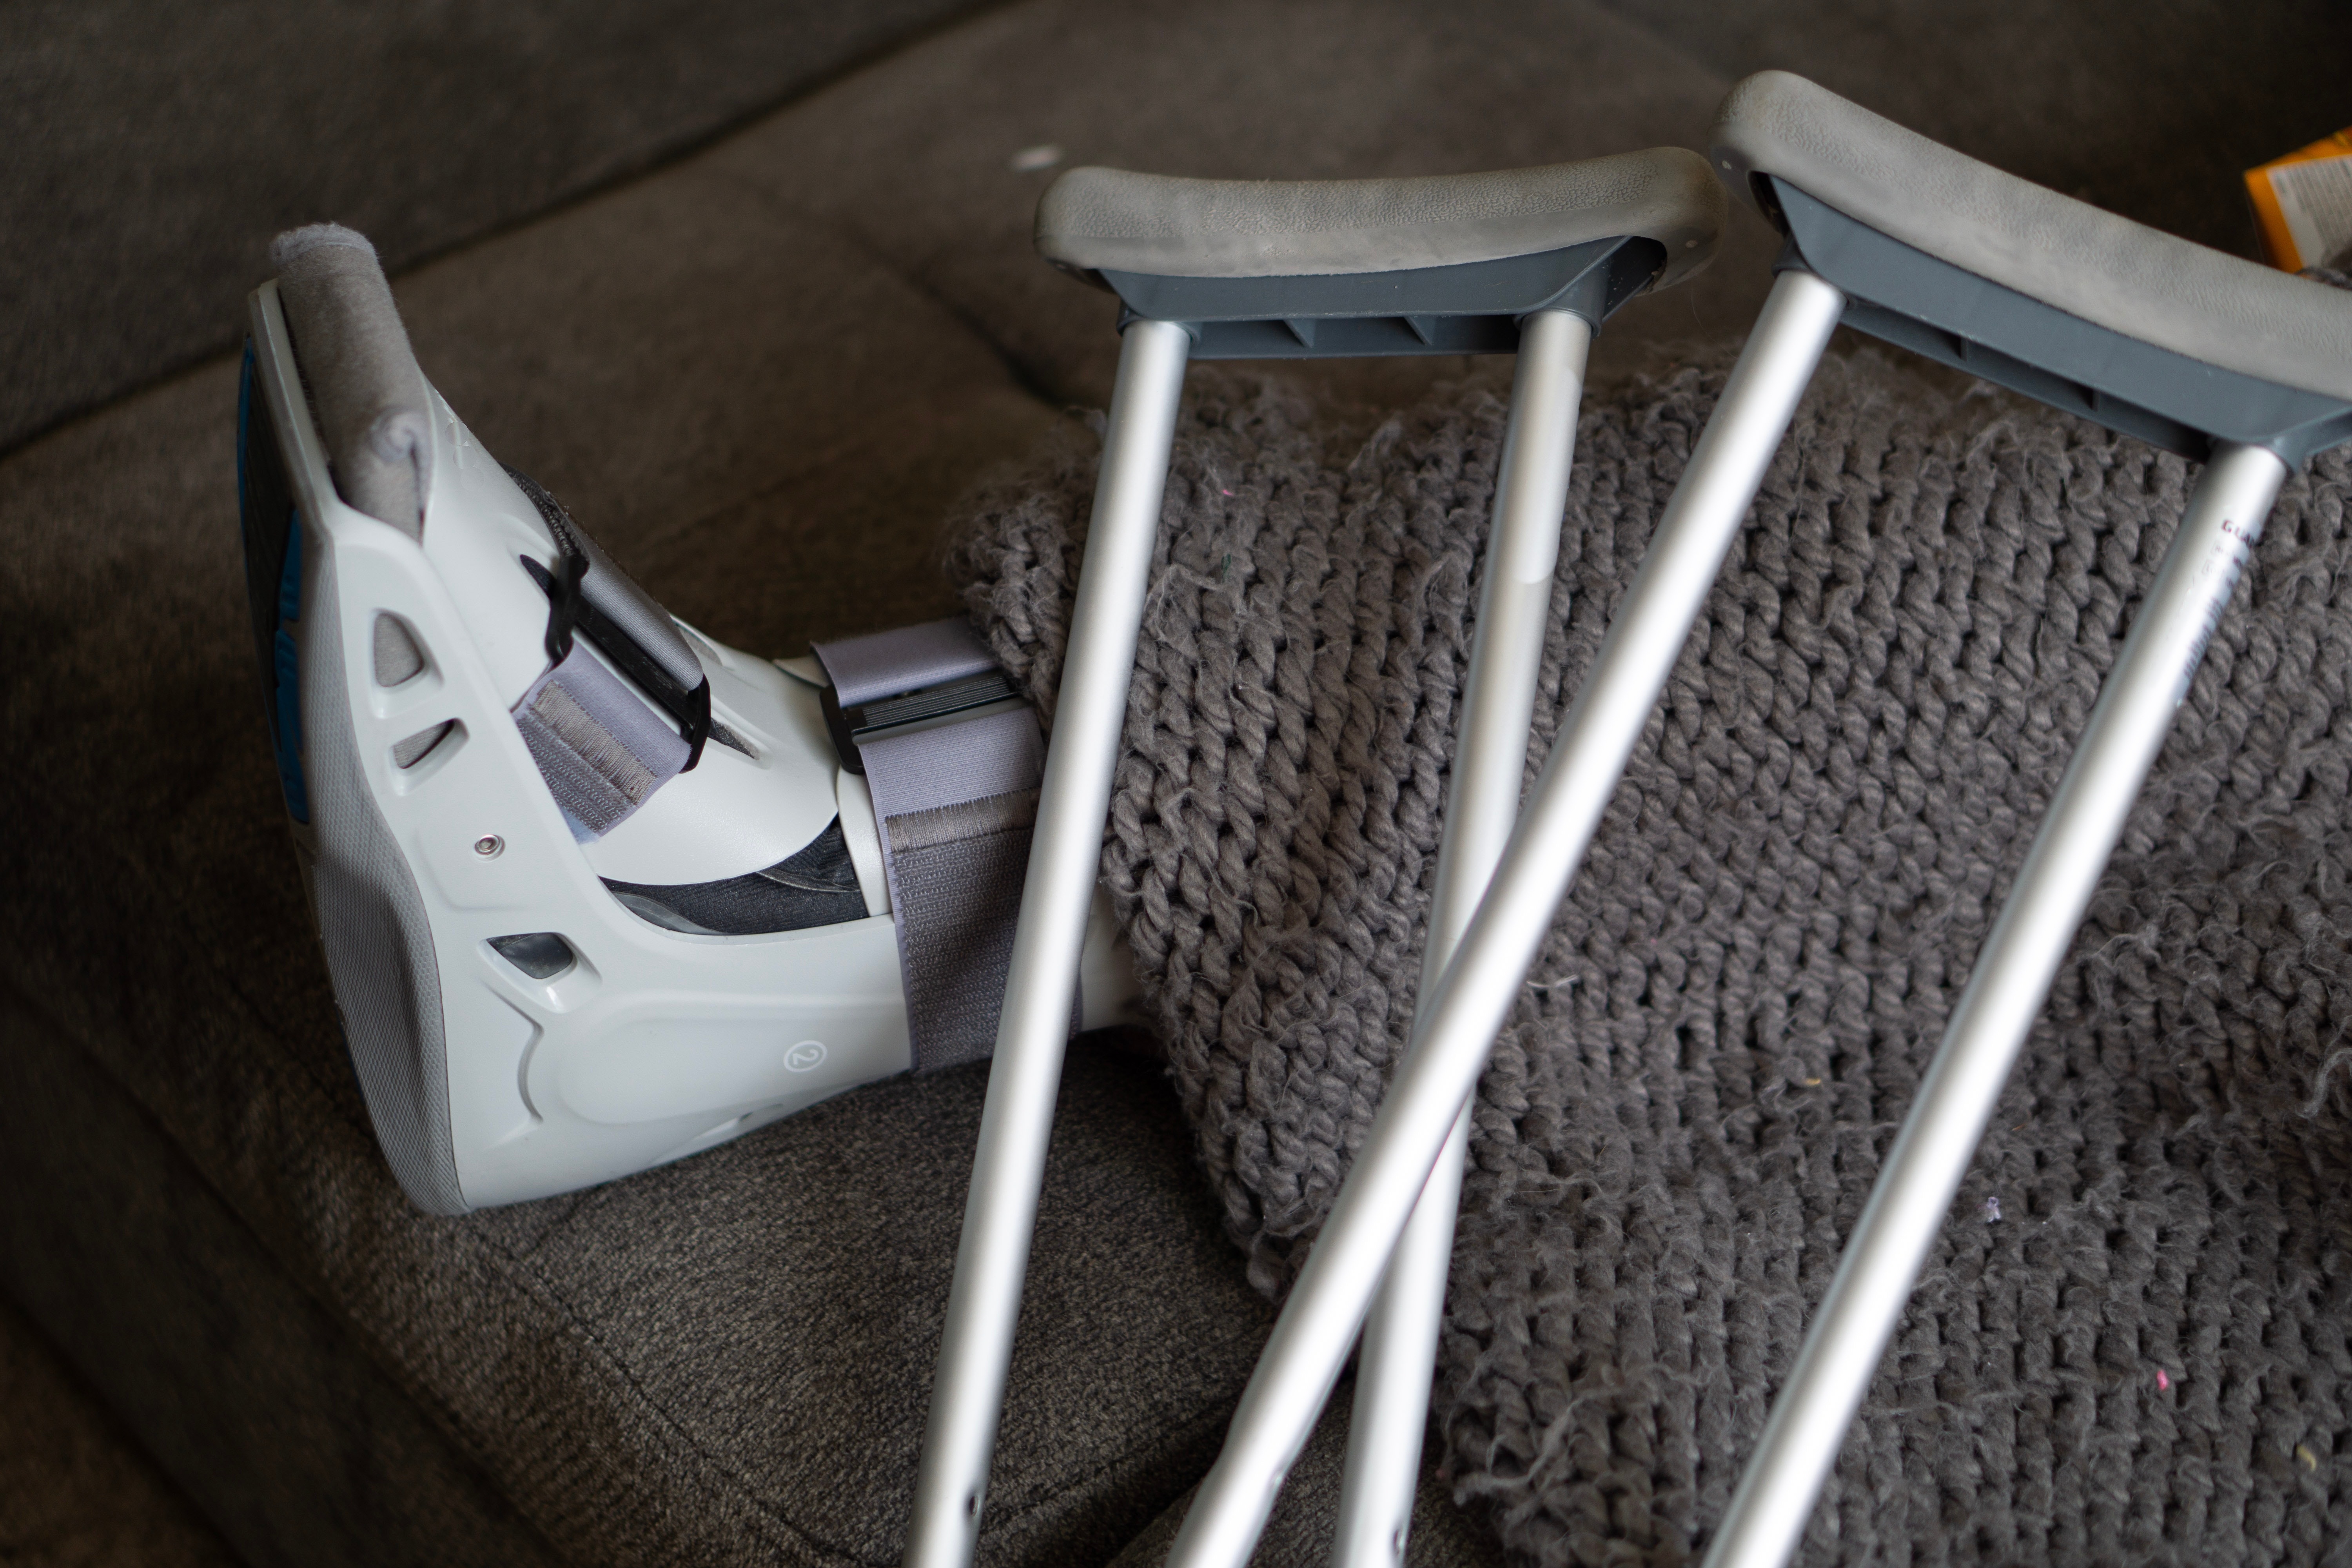 Broken leg and crutches | Source: Pexels